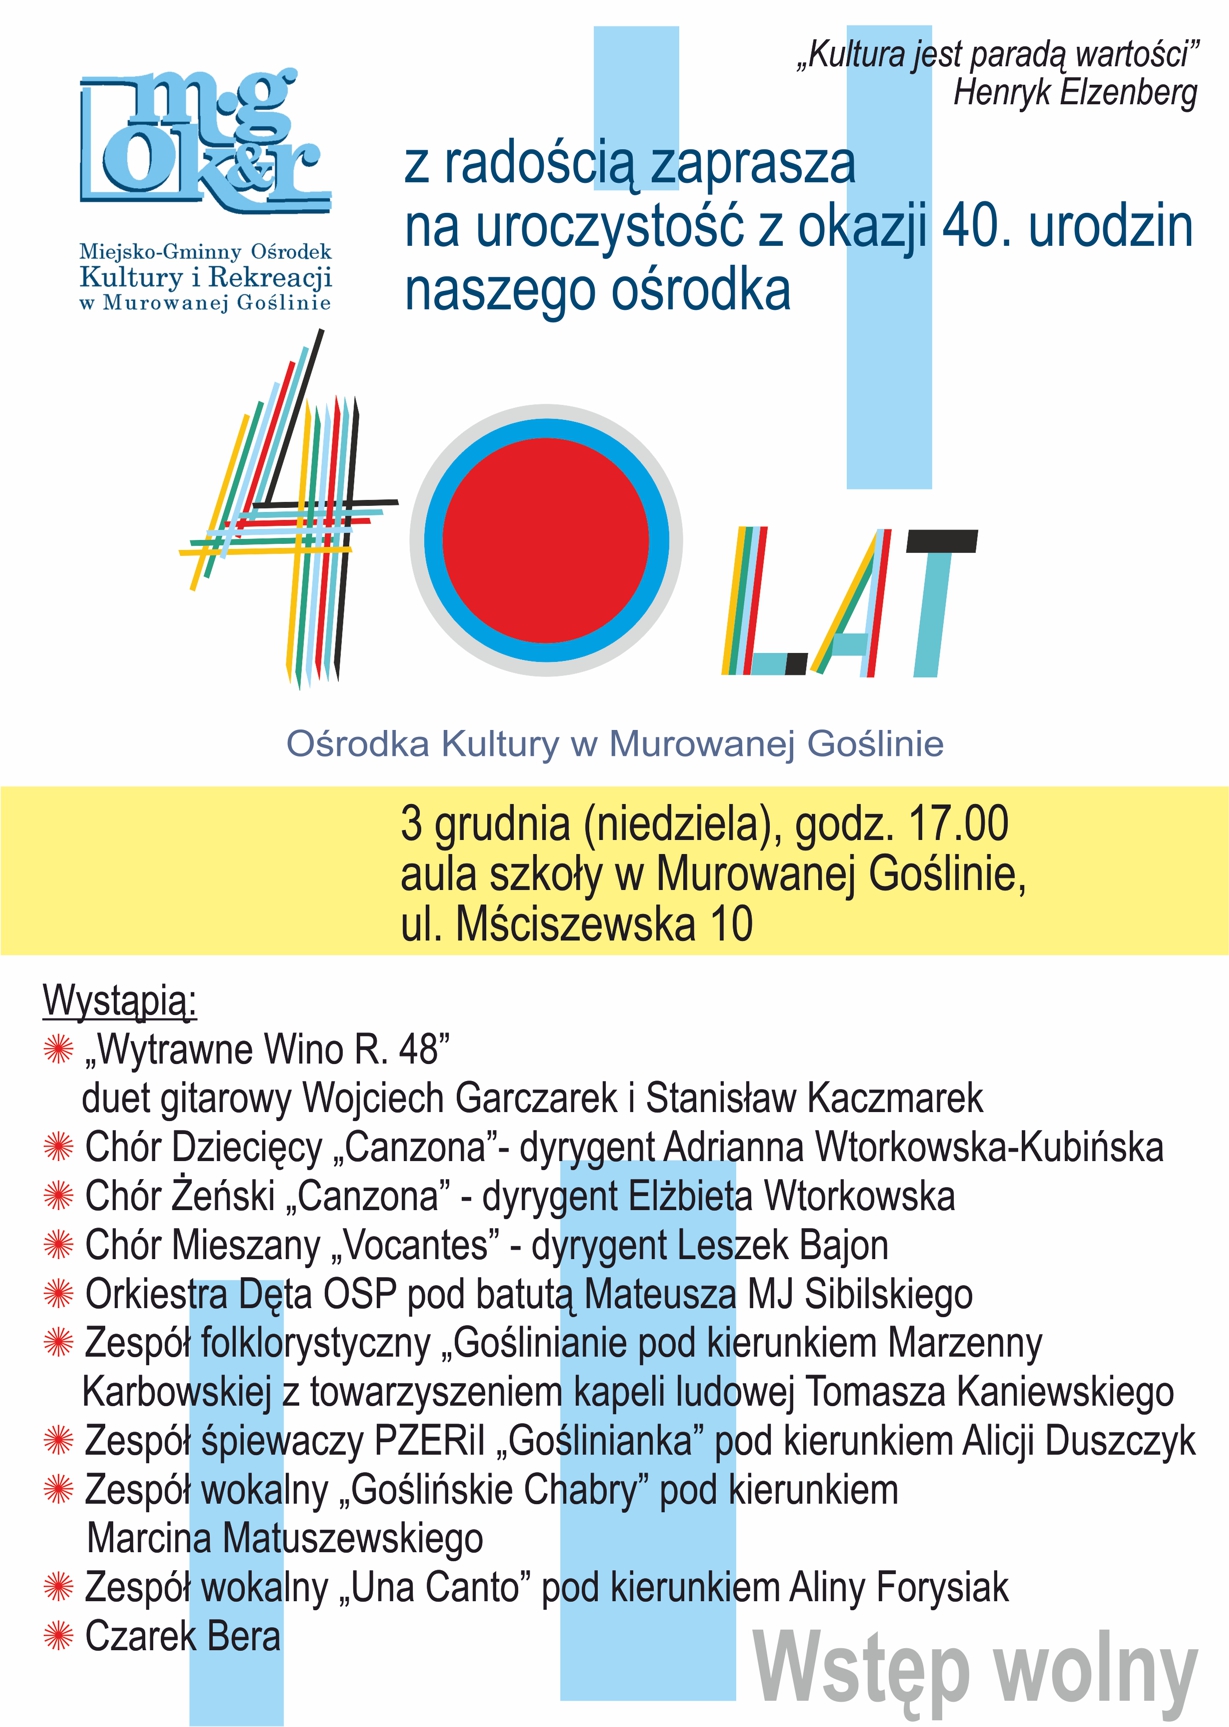 40-lecie Miejsko-Gminnego Ośrodka Kultury i Rekreacji w Murowanej Goślinie - koncert